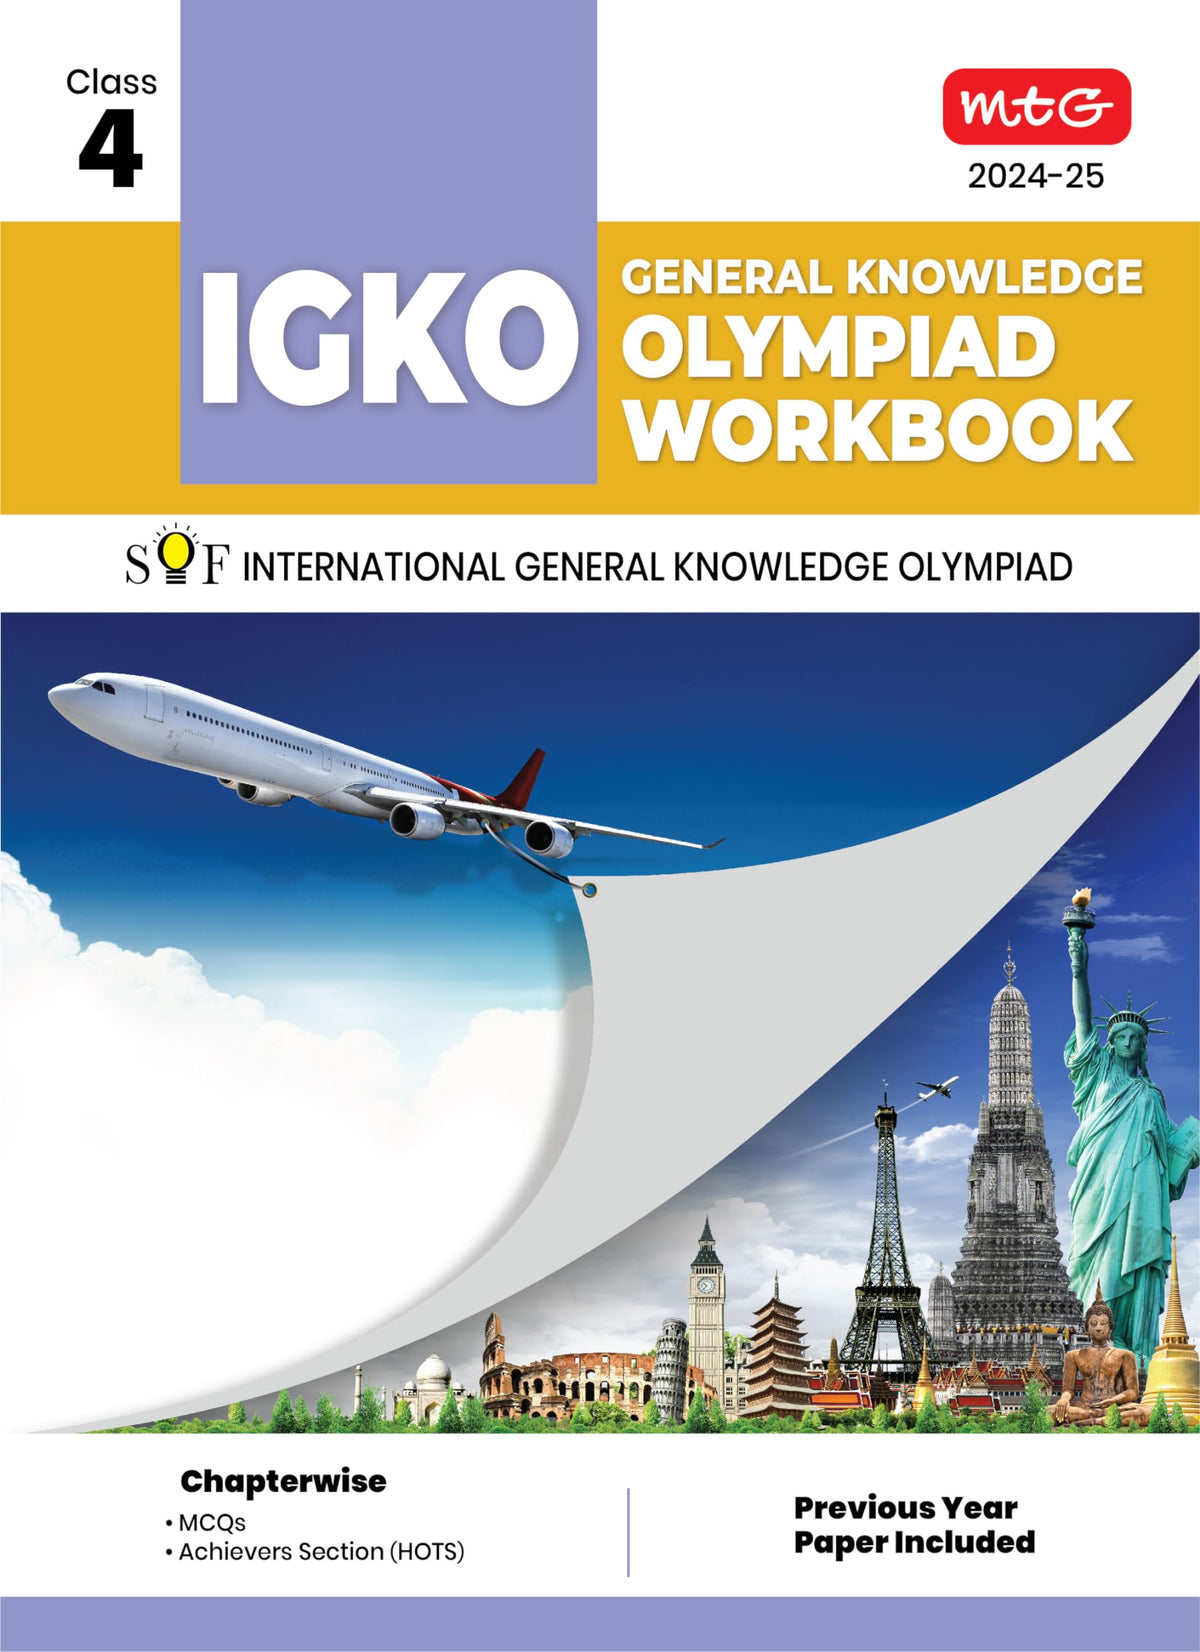 MTG GENERAL KNOWLEDGE OLYMPIAD WORKBOOK IGKO 4